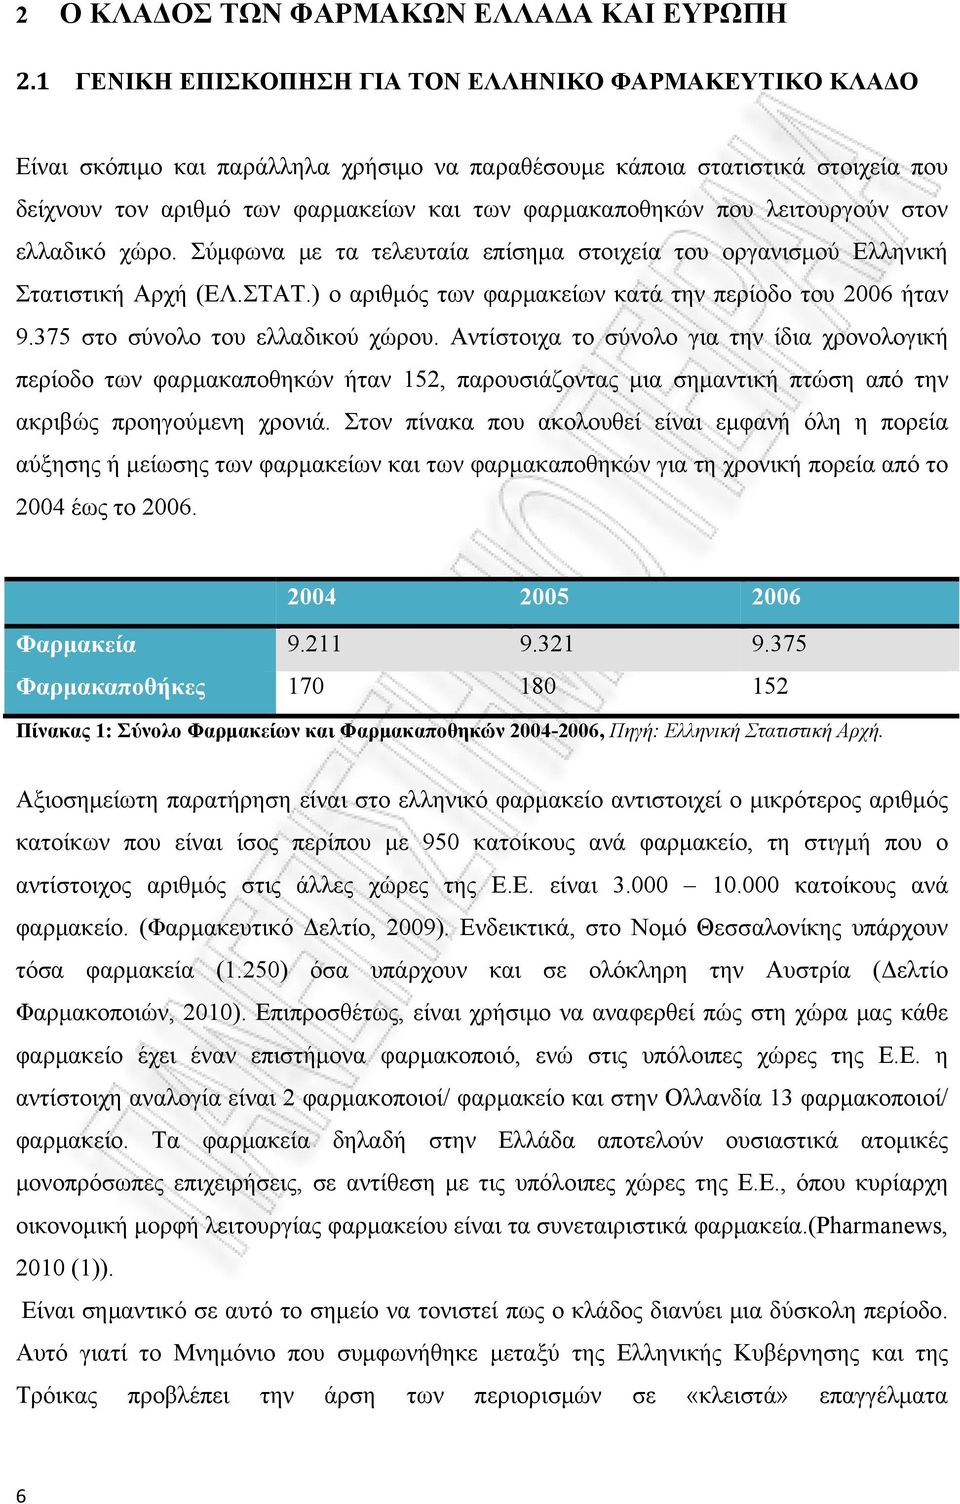 λειτουργούν στον ελλαδικό χώρο. Σύμφωνα με τα τελευταία επίσημα στοιχεία του οργανισμού Ελληνική Στατιστική Αρχή (ΕΛ.ΣΤΑΤ.) ο αριθμός των φαρμακείων κατά την περίοδο του 2006 ήταν 9.